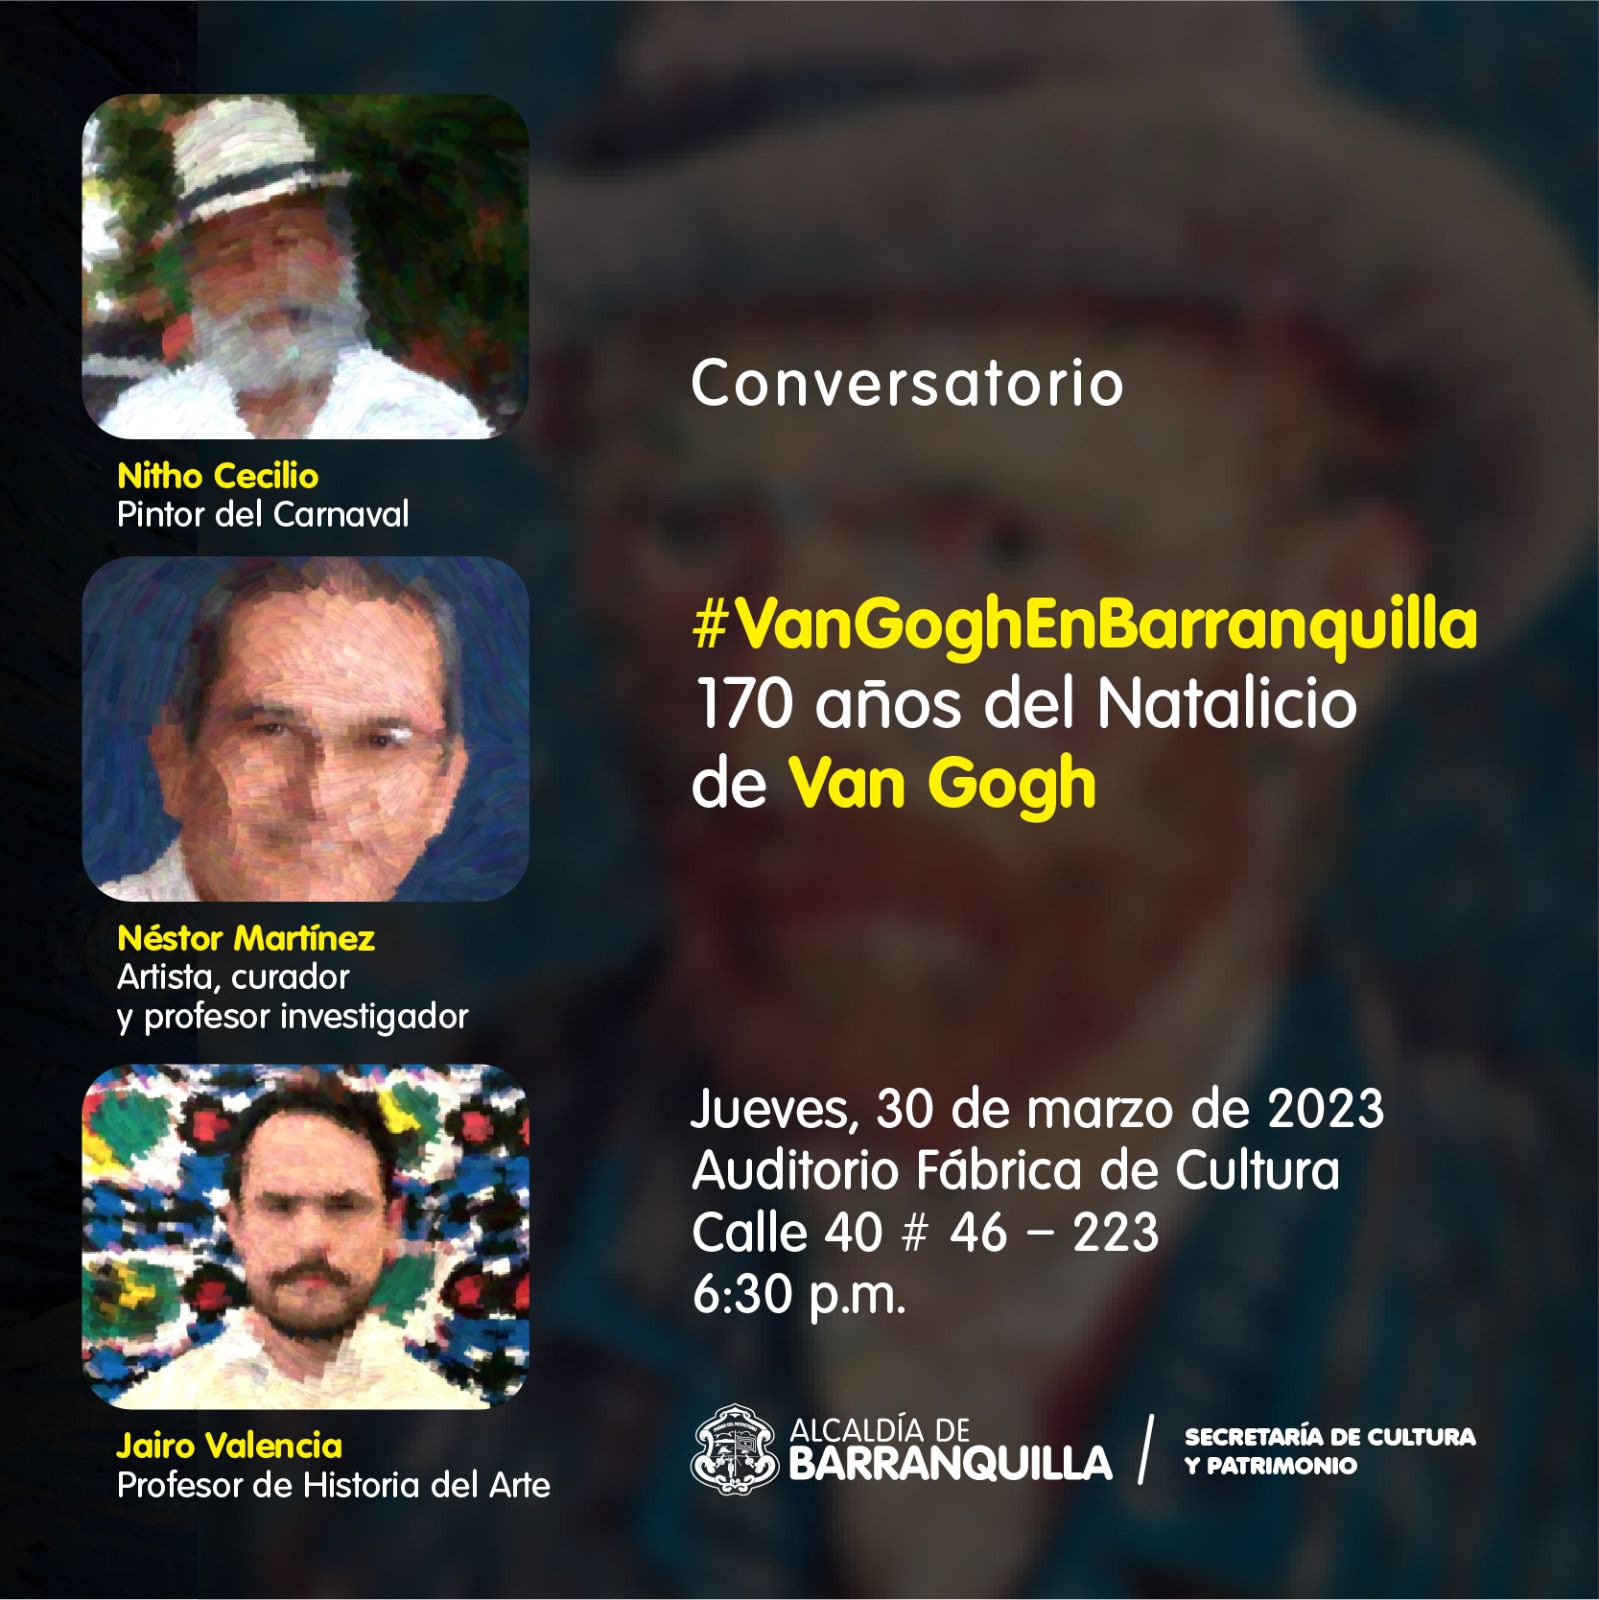 Conversatorio en la Fabrica de la Cultura sobre los 170 años de Vicent Van Gogh